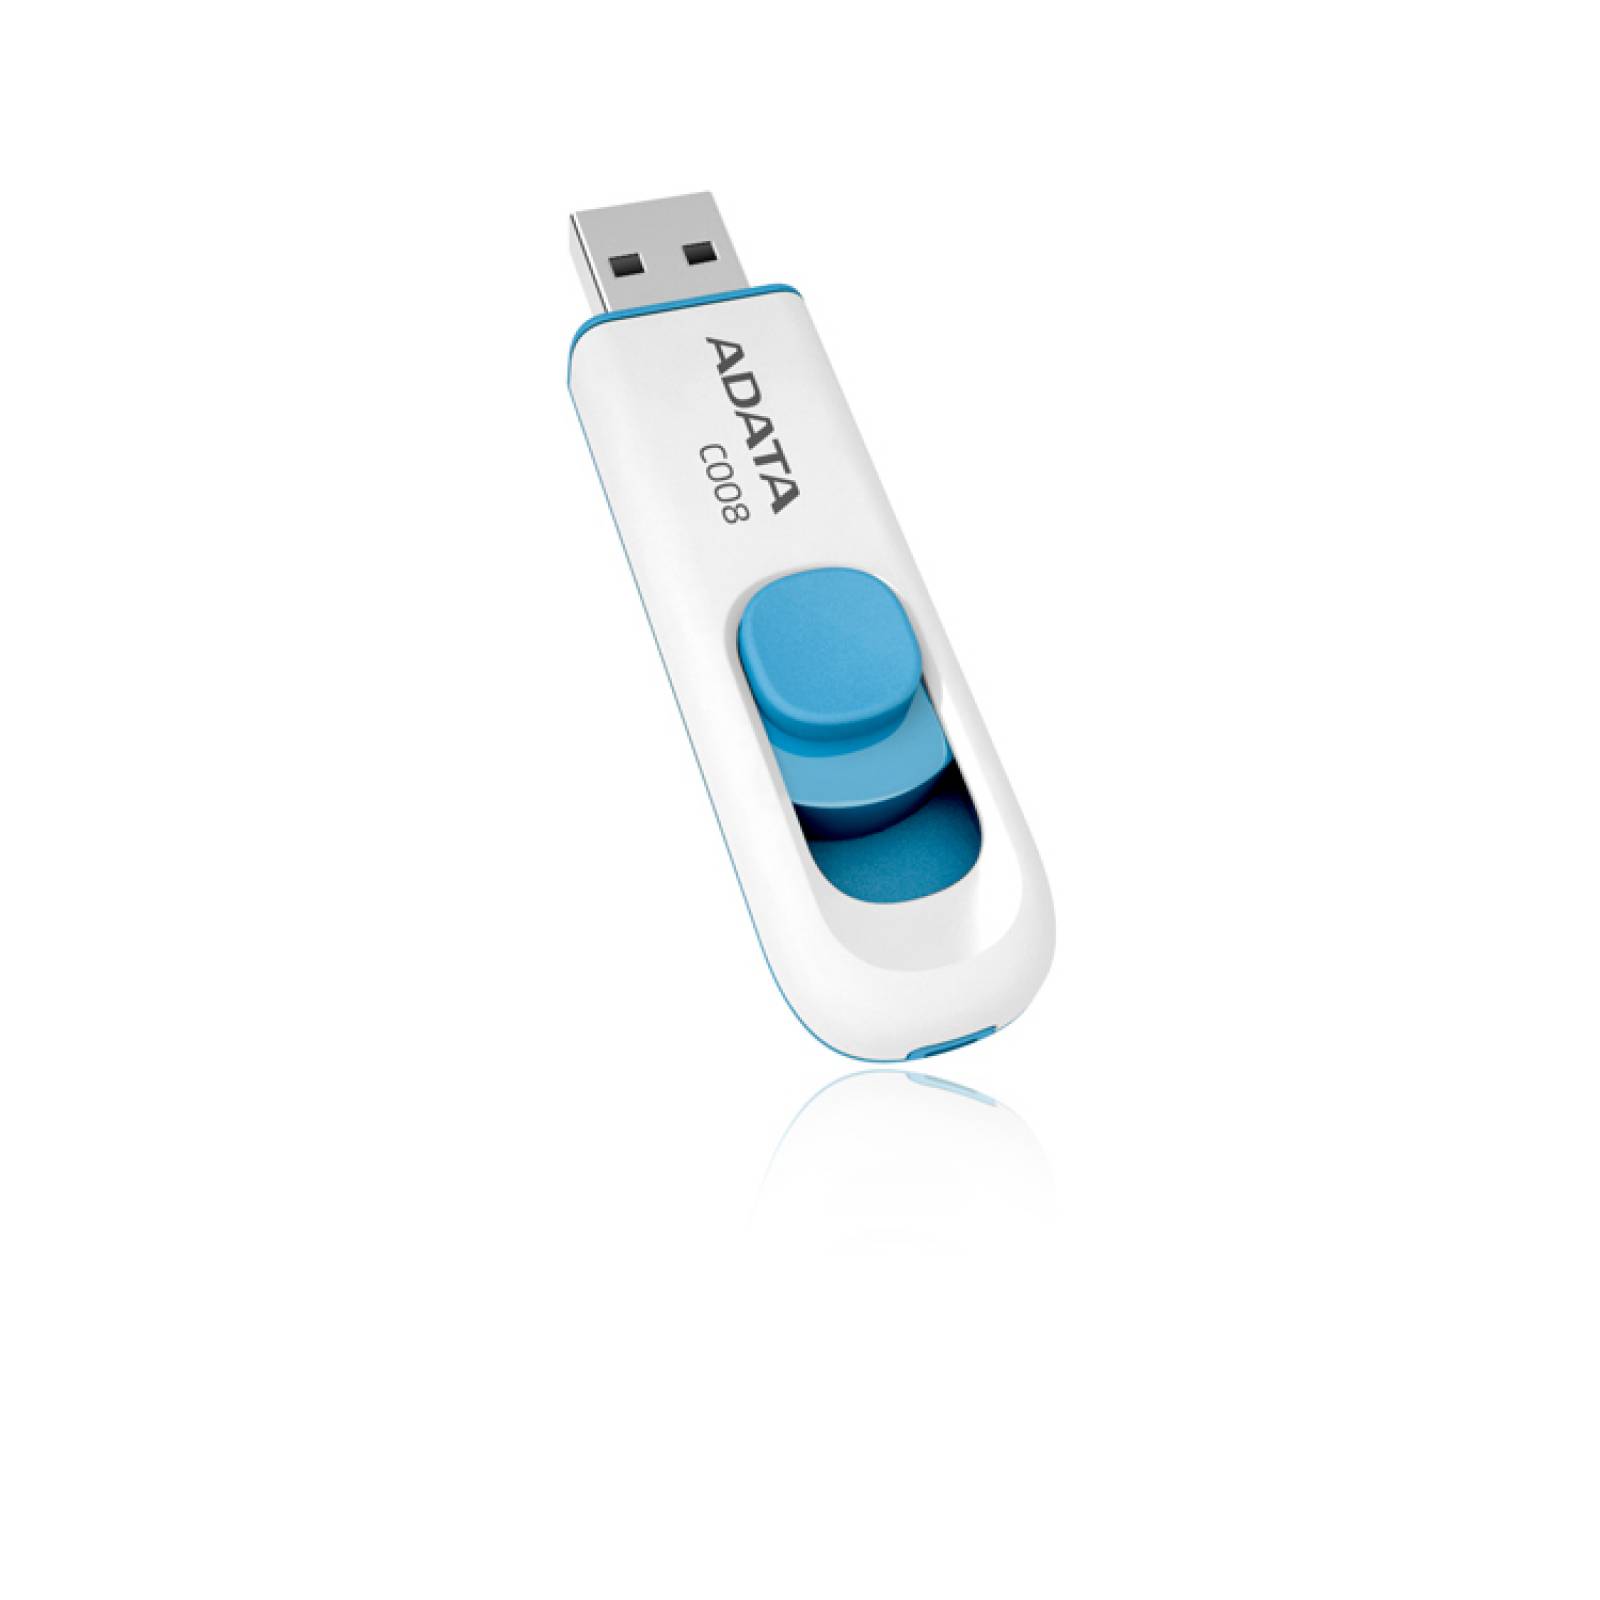 Memoria USB 2.0 Adata C008 32GB Color Blanco Azul